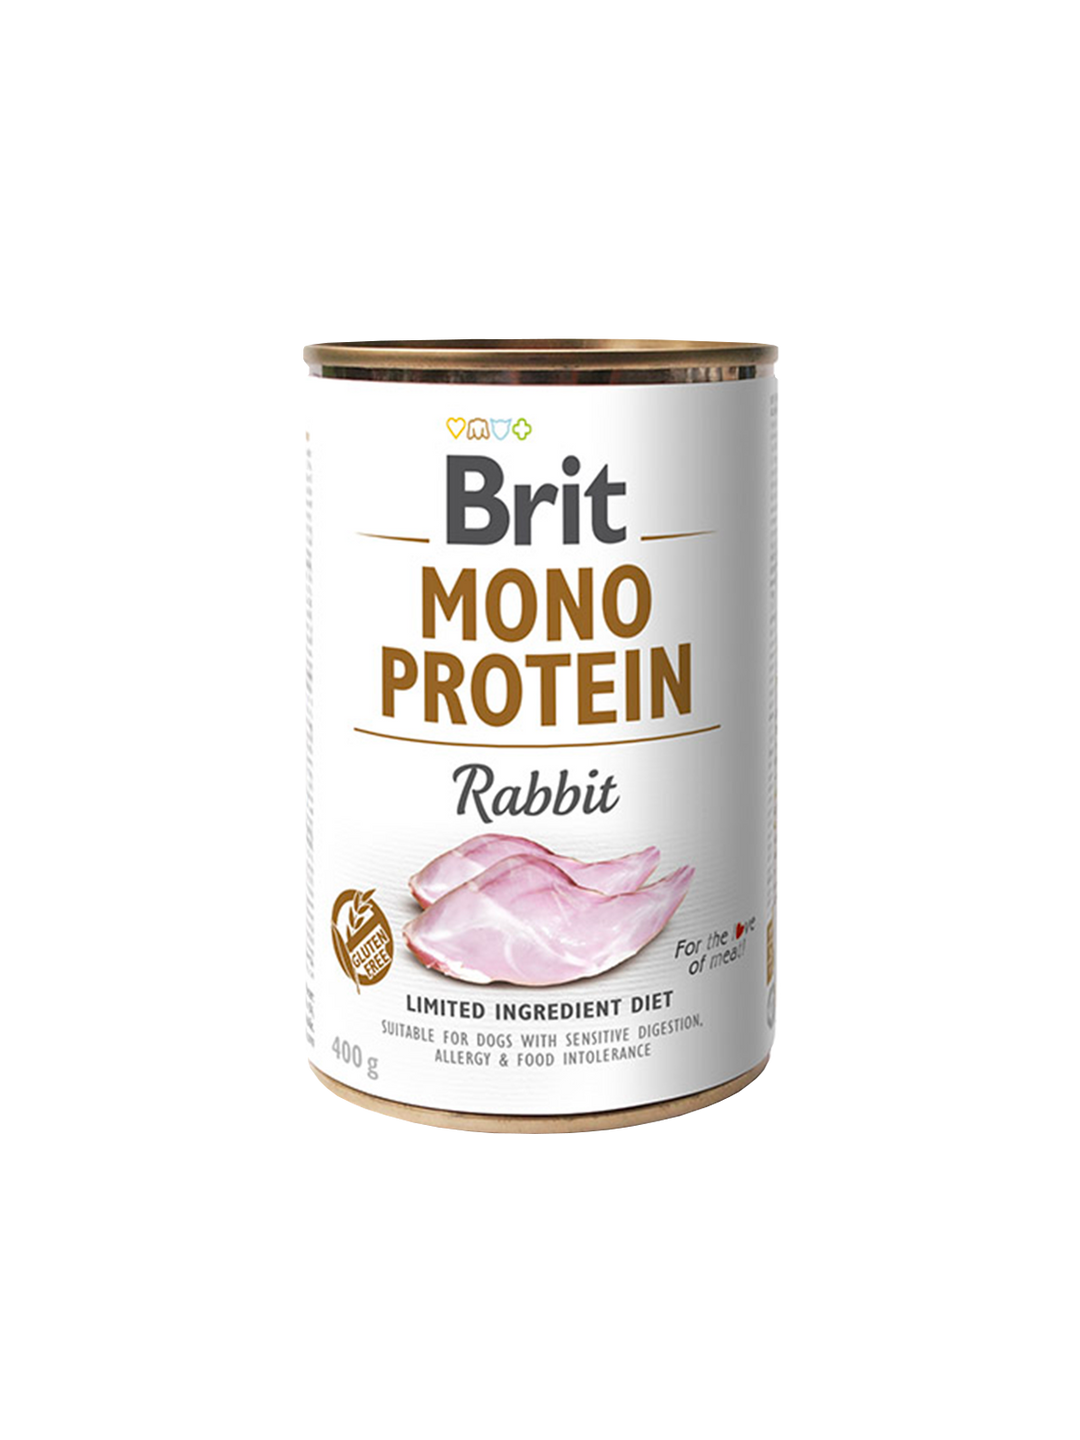 Brit Mono Protein tins 400g - Rabbit